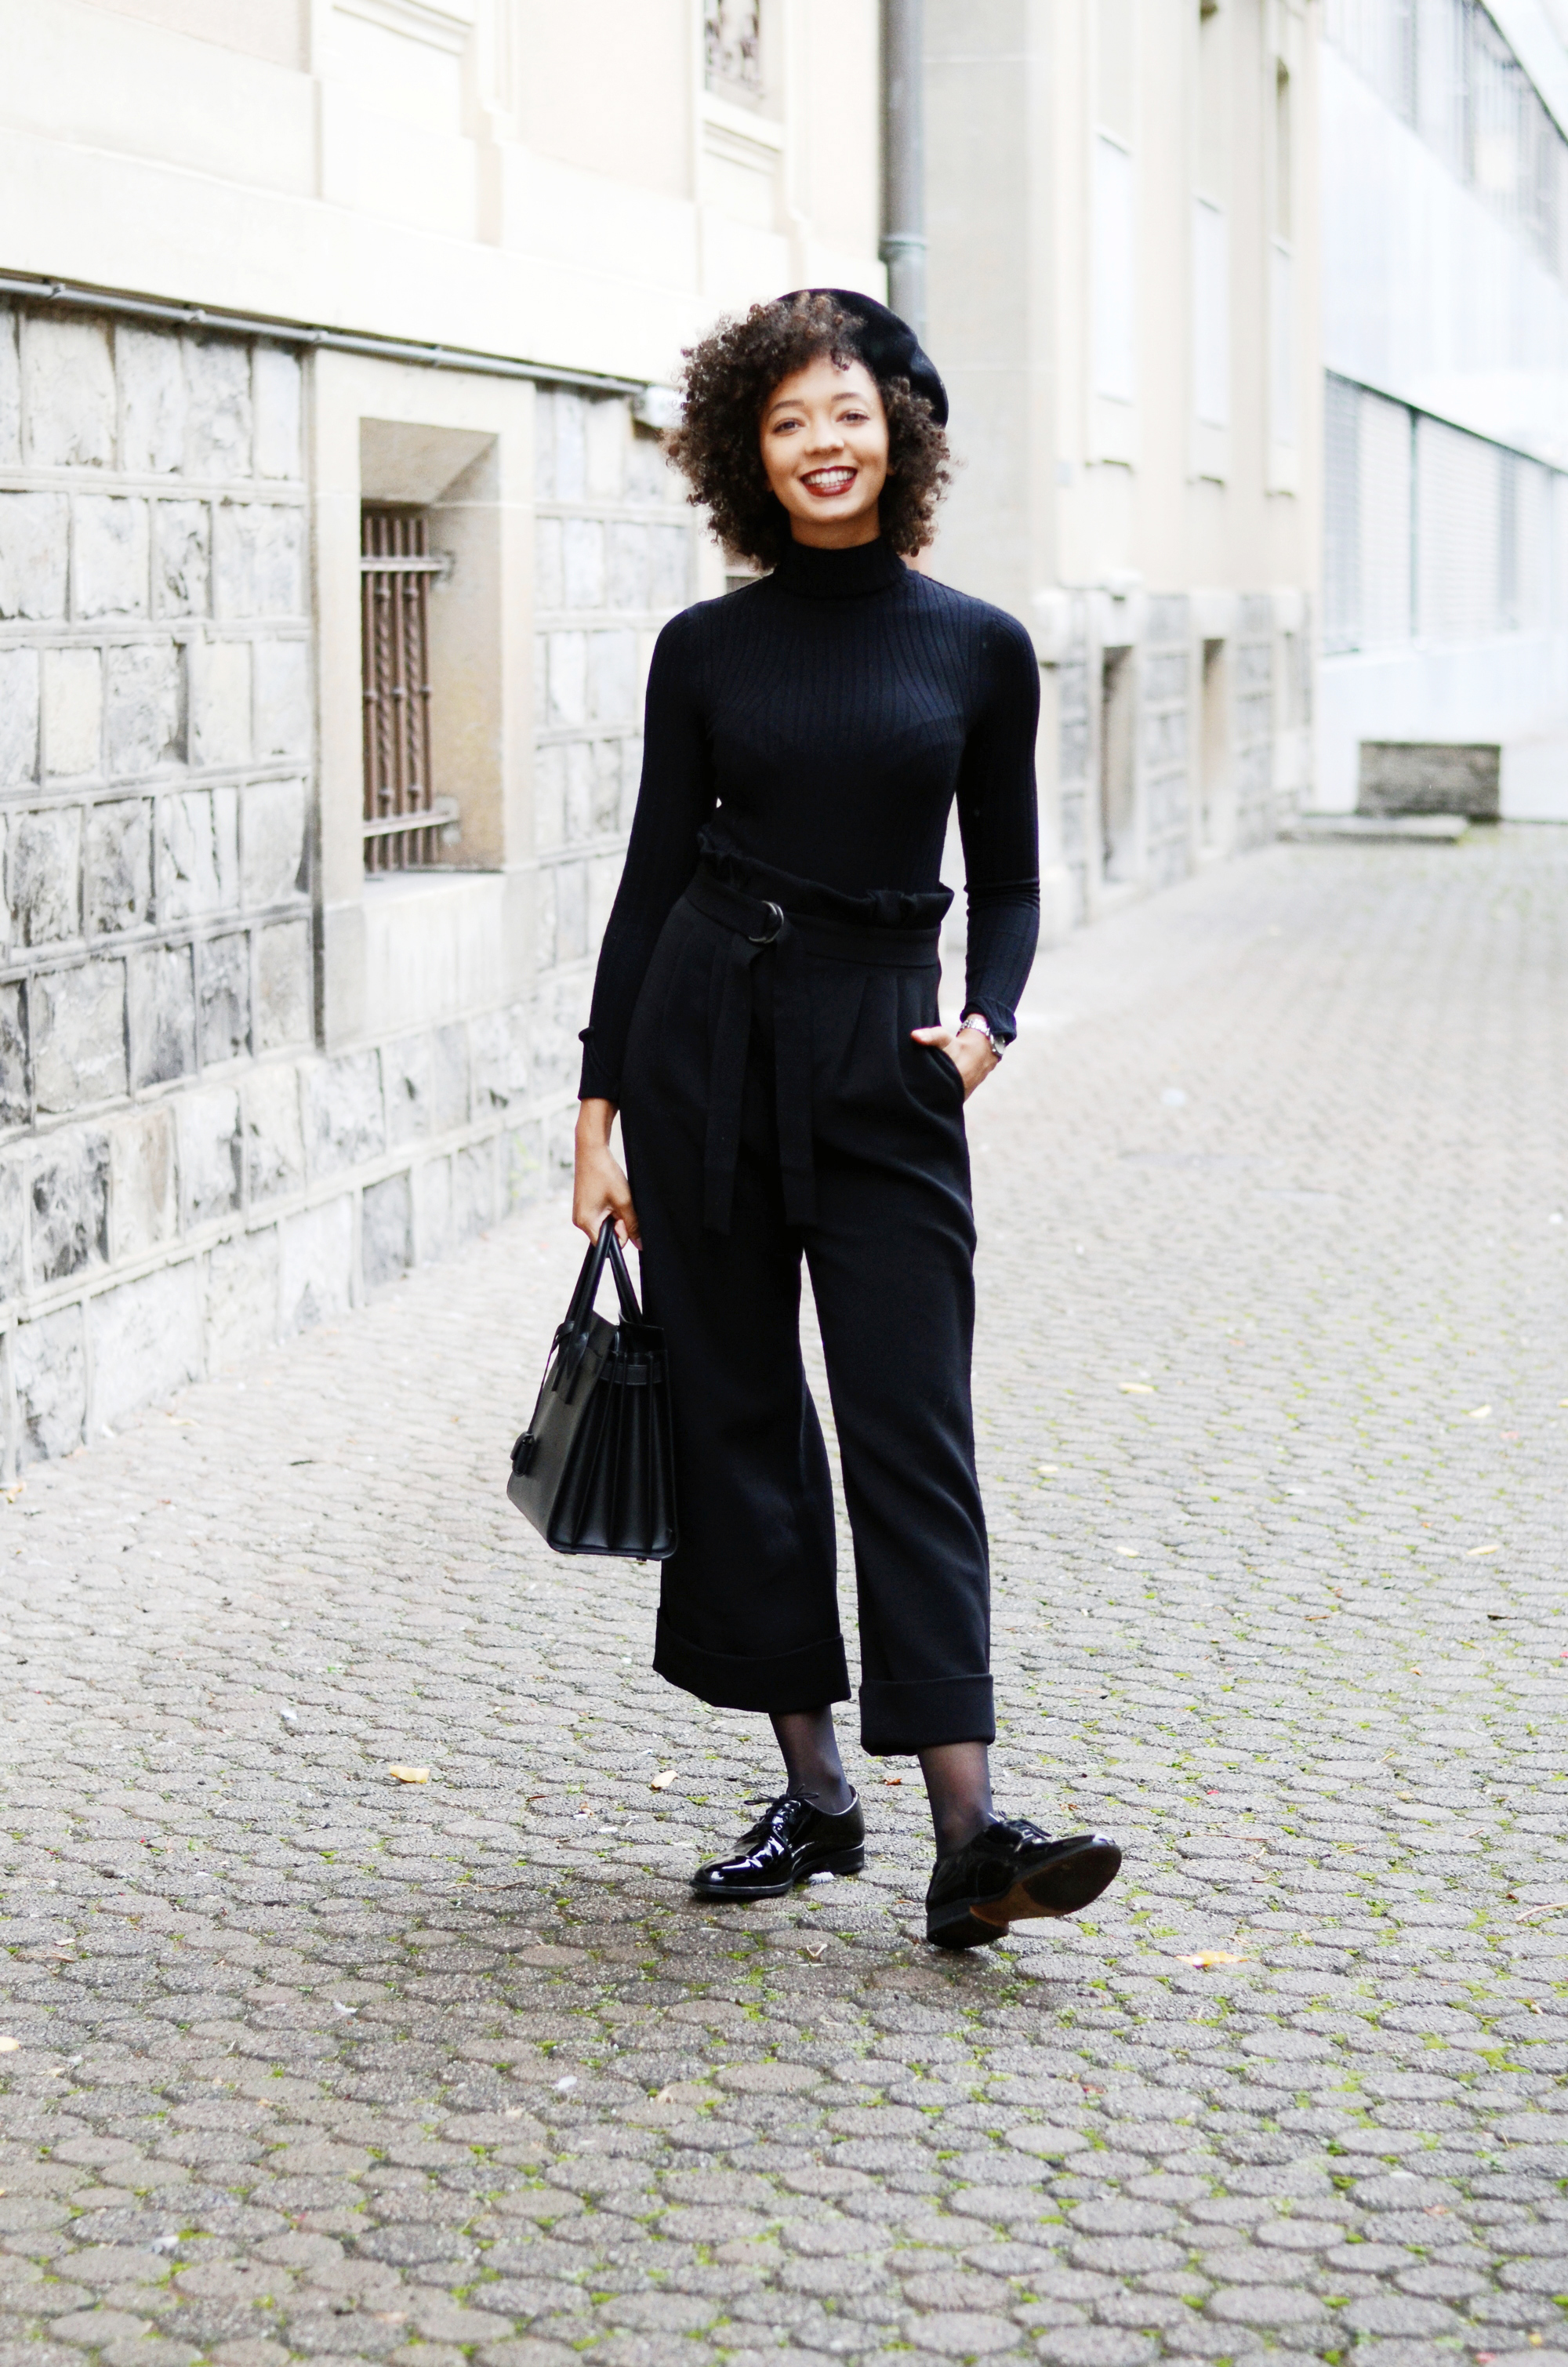 mercredie-blog-mode-geneve-suisse-fashion-blogger-all-black-outfit-chic-saint-laurent-sac-de-jour-black-matte-derbies-vernies-shoepassion-102-afro-beret-parisian-look